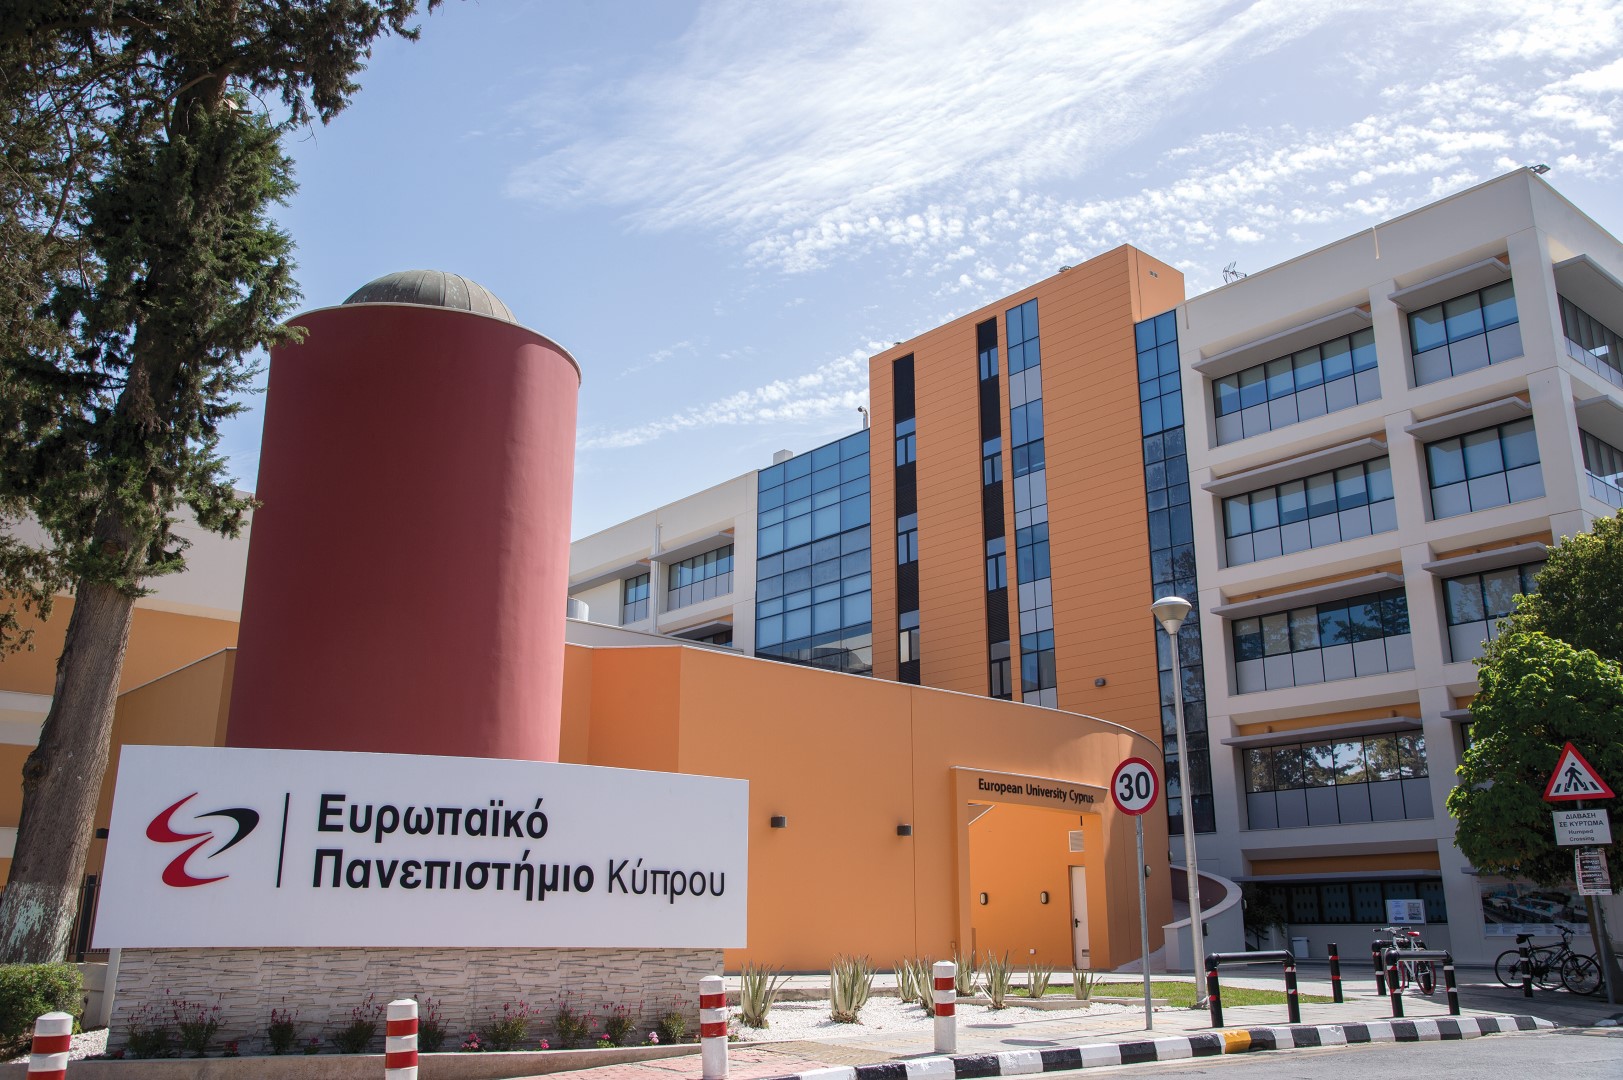 Οι Ελληνικές Σπουδές στο Ευρωπαϊκό Πανεπιστήμιο Κύπρου